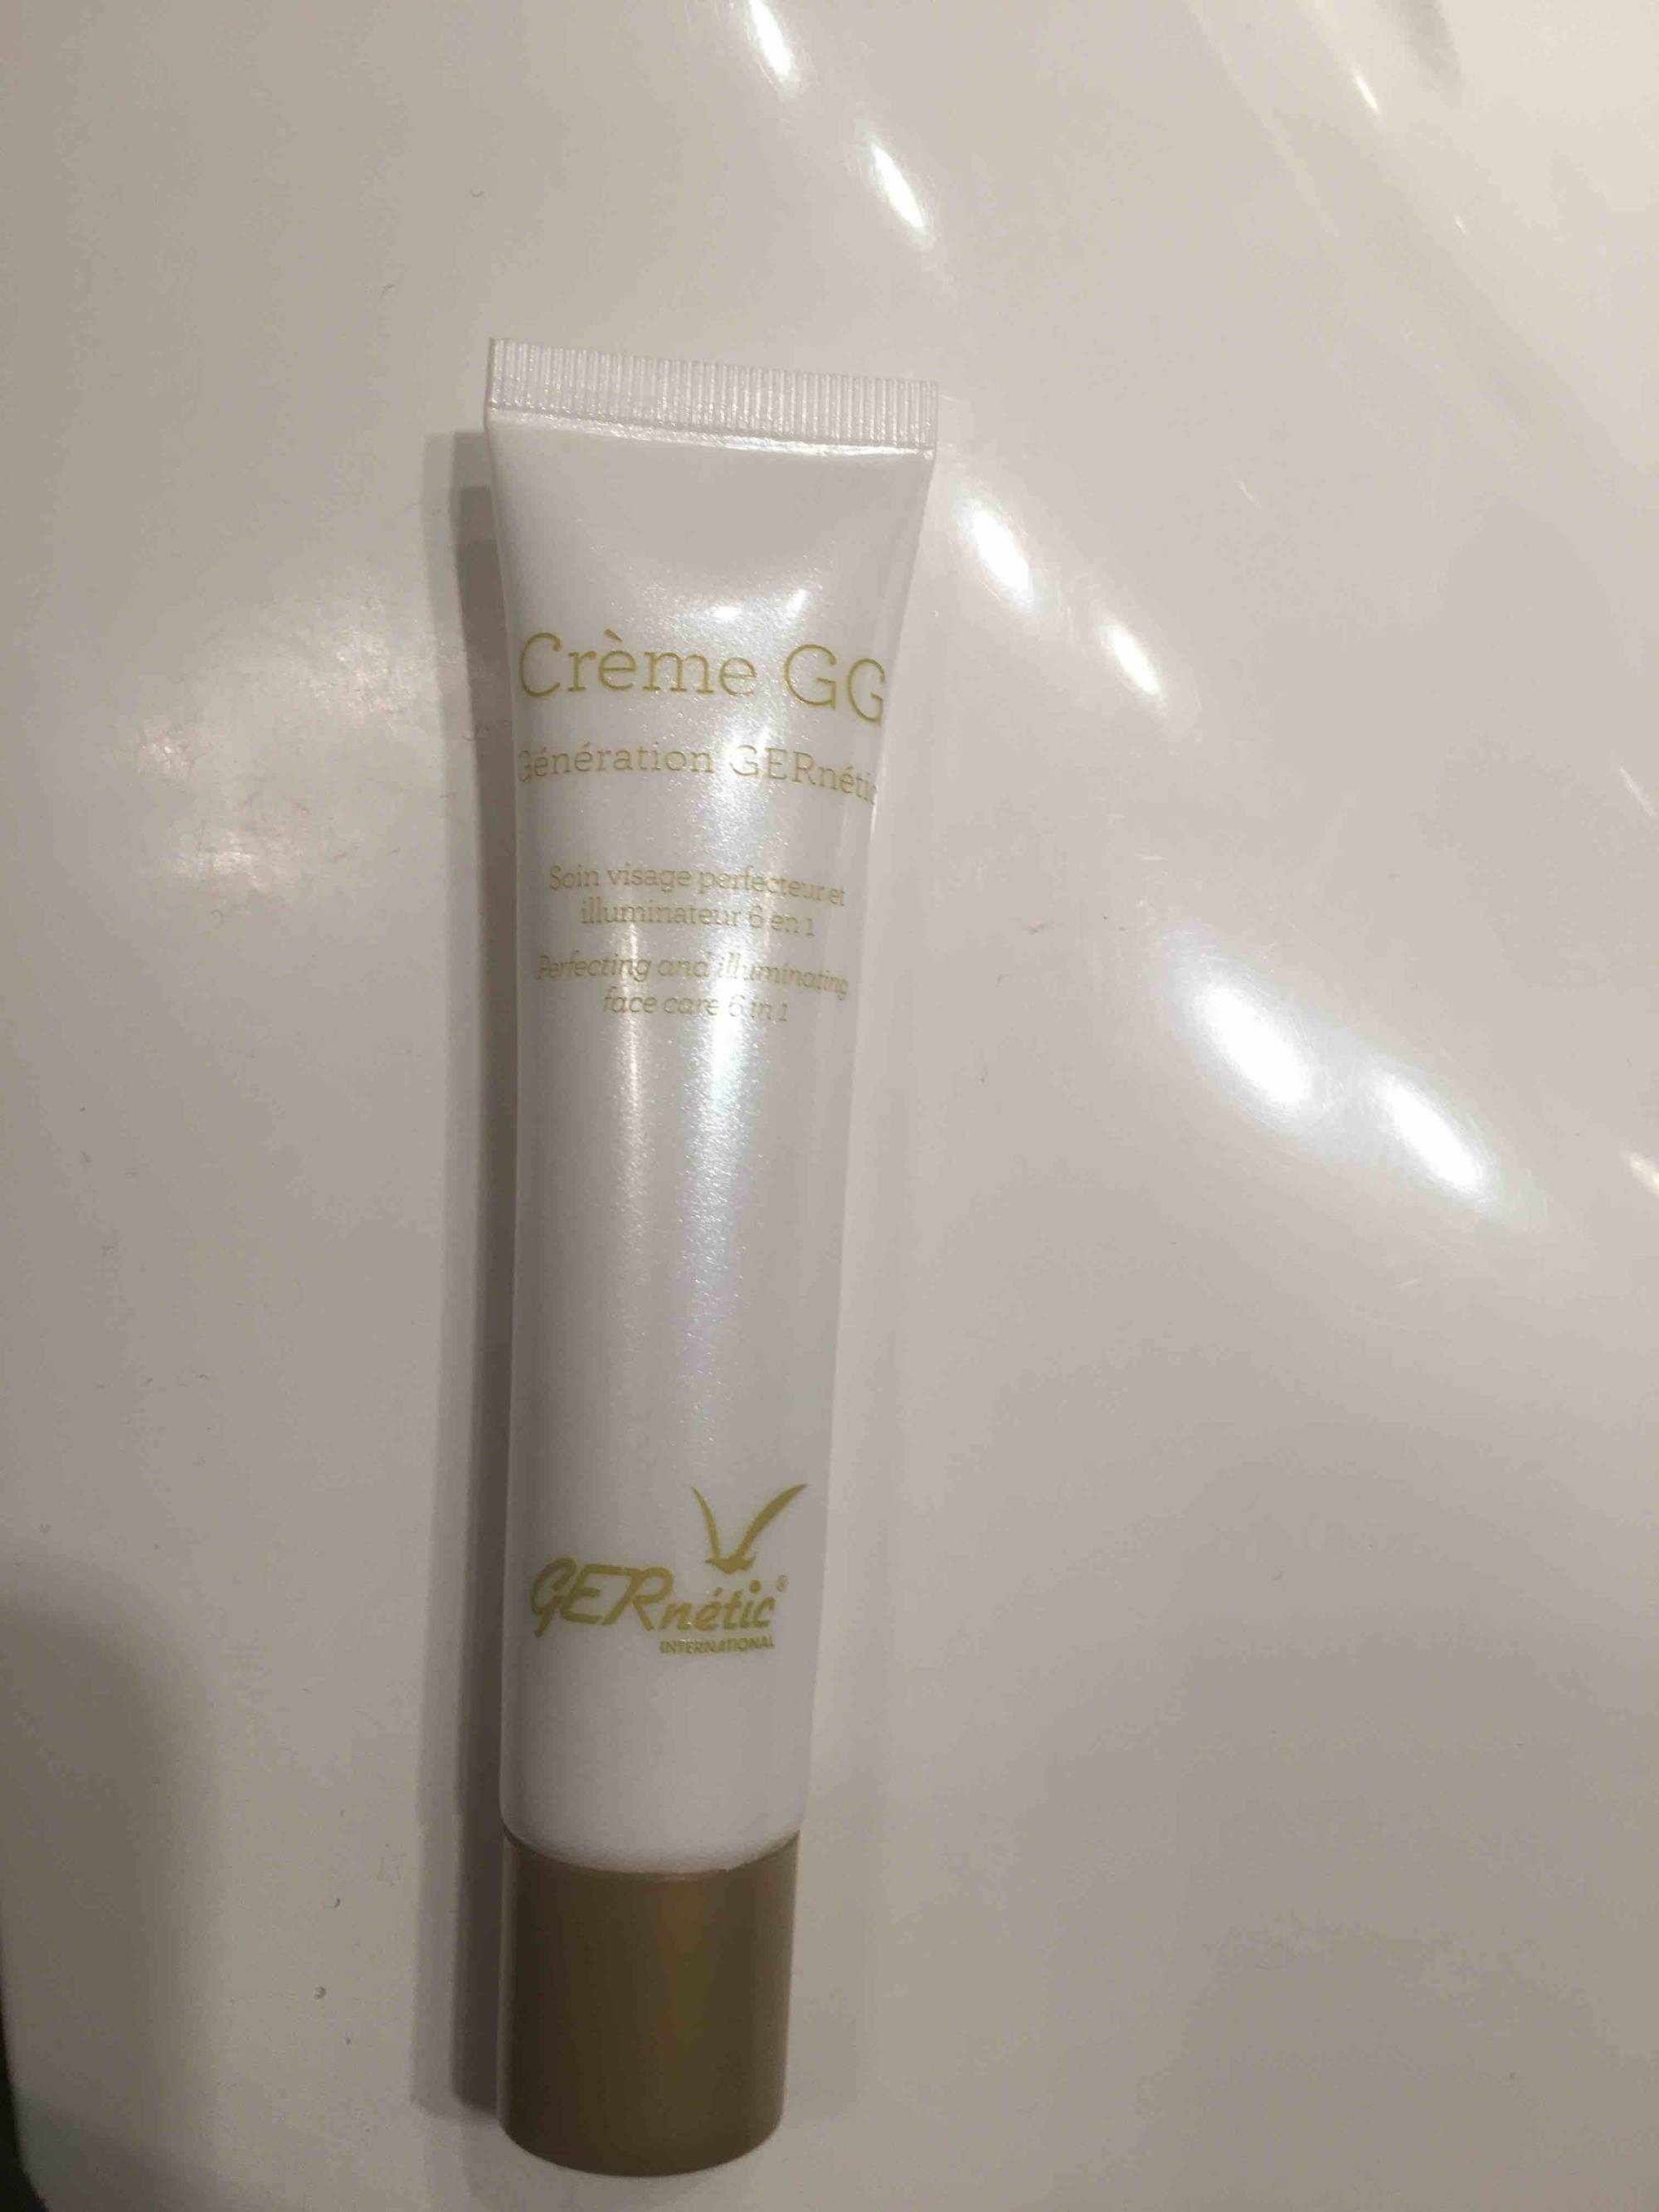 GERNÉTIC - Crème GG - Soin visage perfecteur et illuminateur 6 en 1